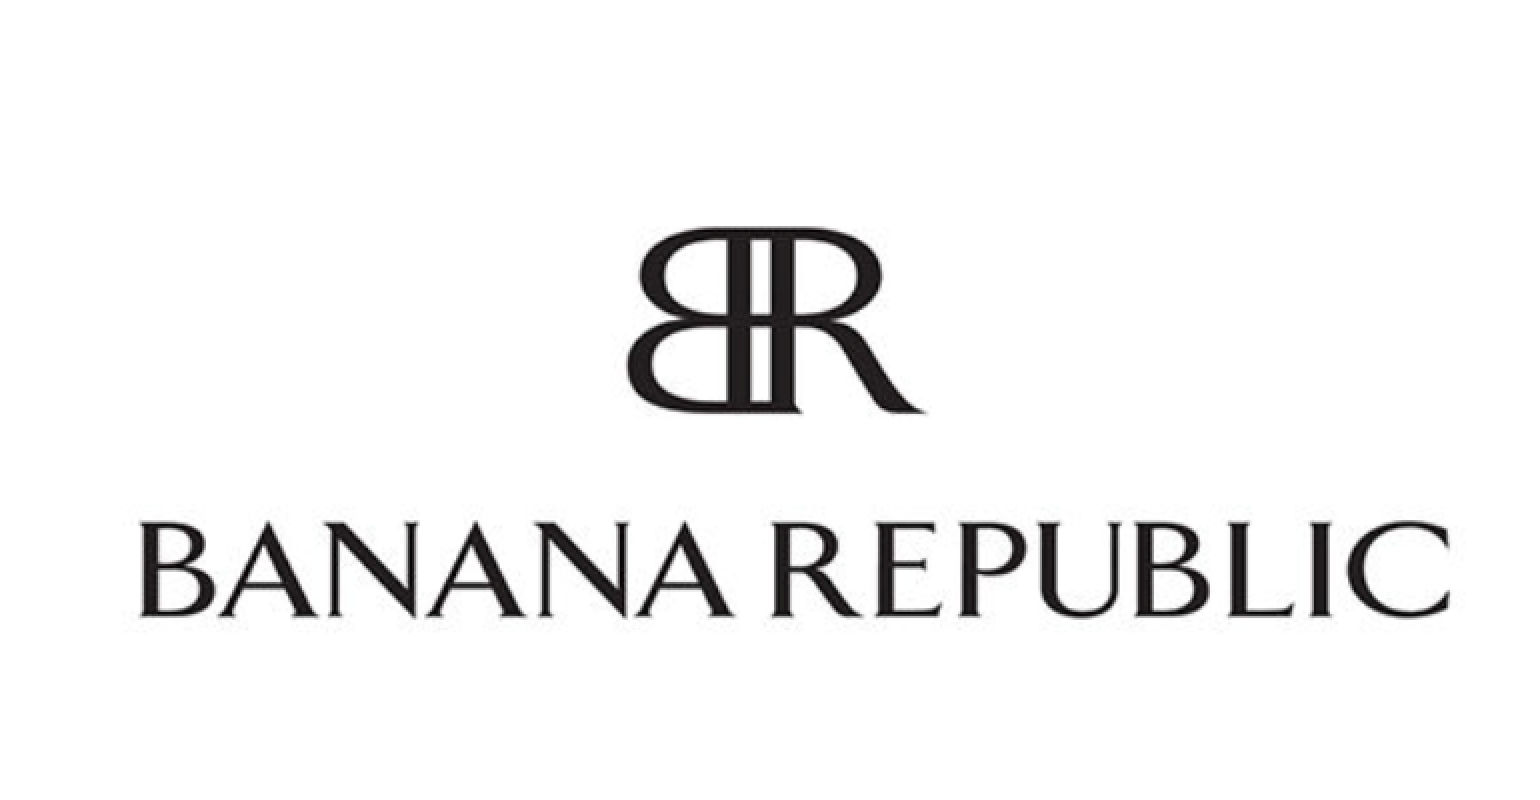 BANANA REPUBLIC - Shop the USA